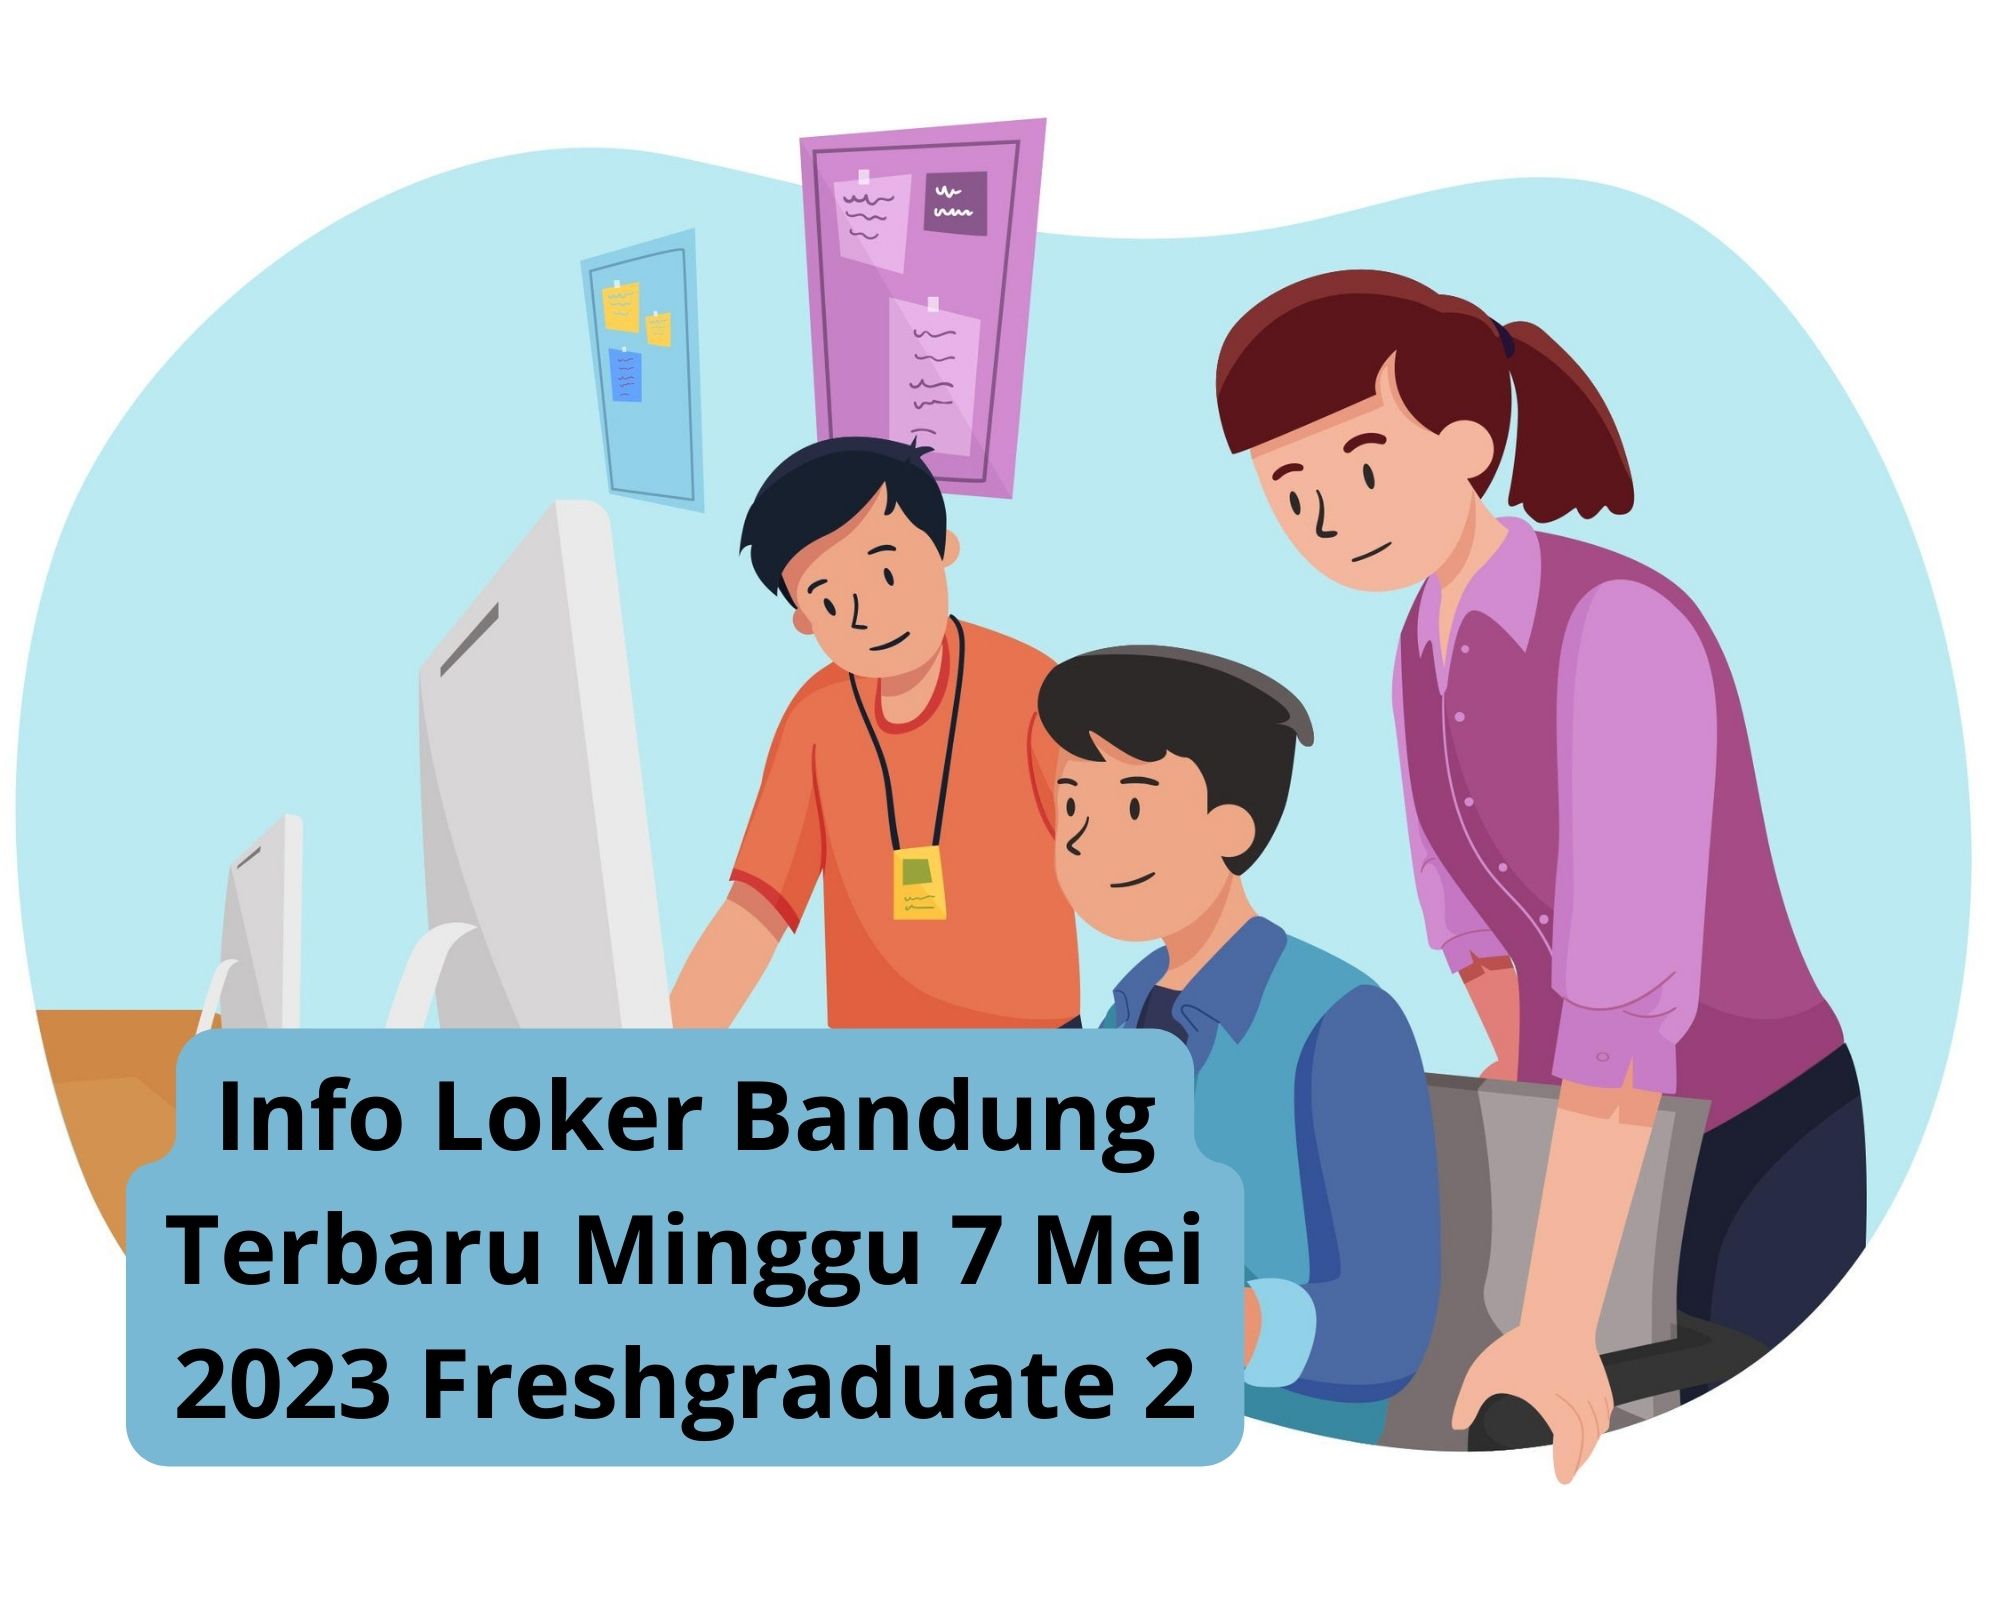 Info Loker Bandung Terbaru Minggu 7 Mei 2023 Freshgraduate 2